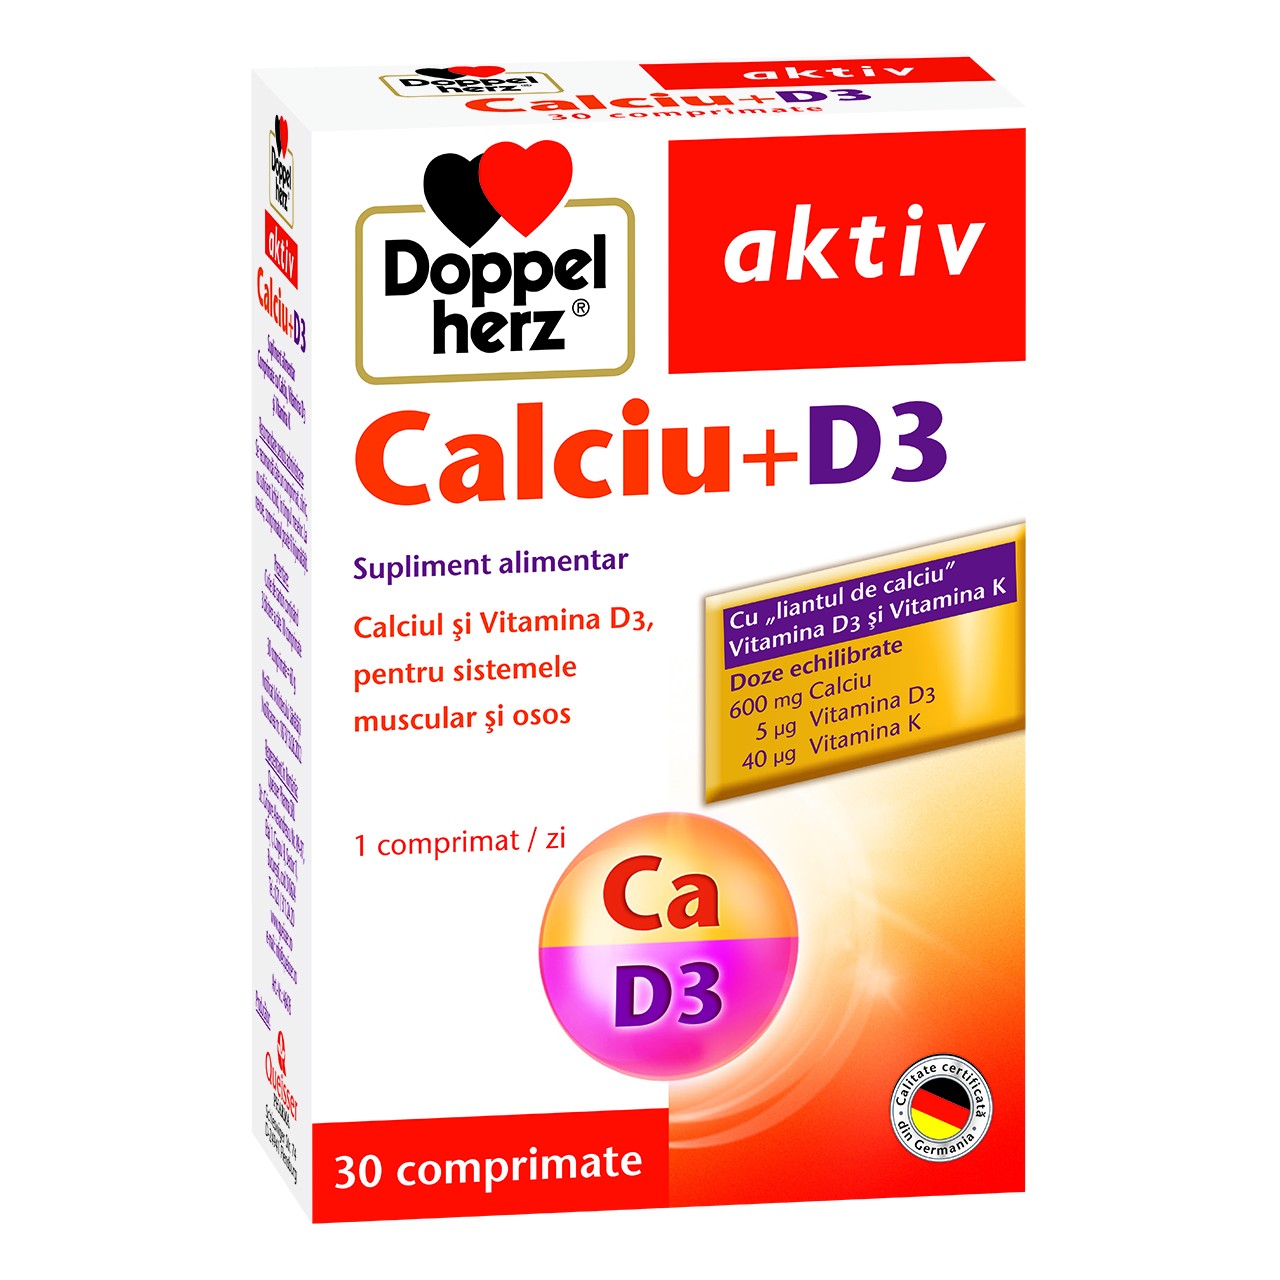 Vitamine și minerale - DOPPELHERZ AKTIV CALCIU + D3 30TB+10TB, axafarm.ro